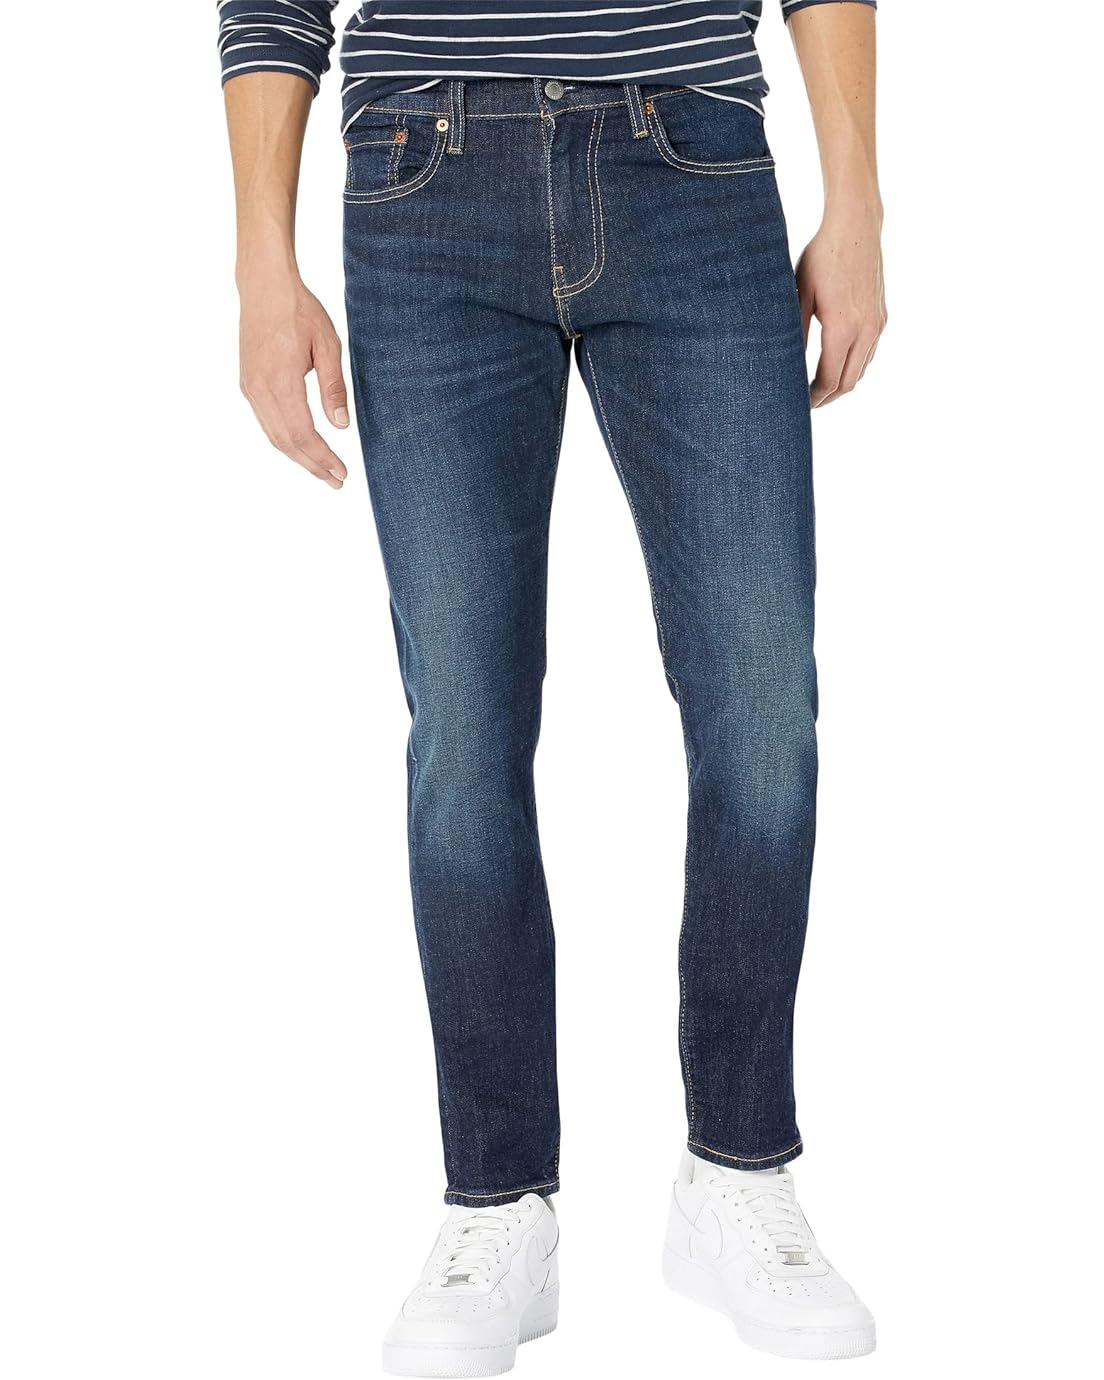 Levis Premium 512 Slim Taper Jeans